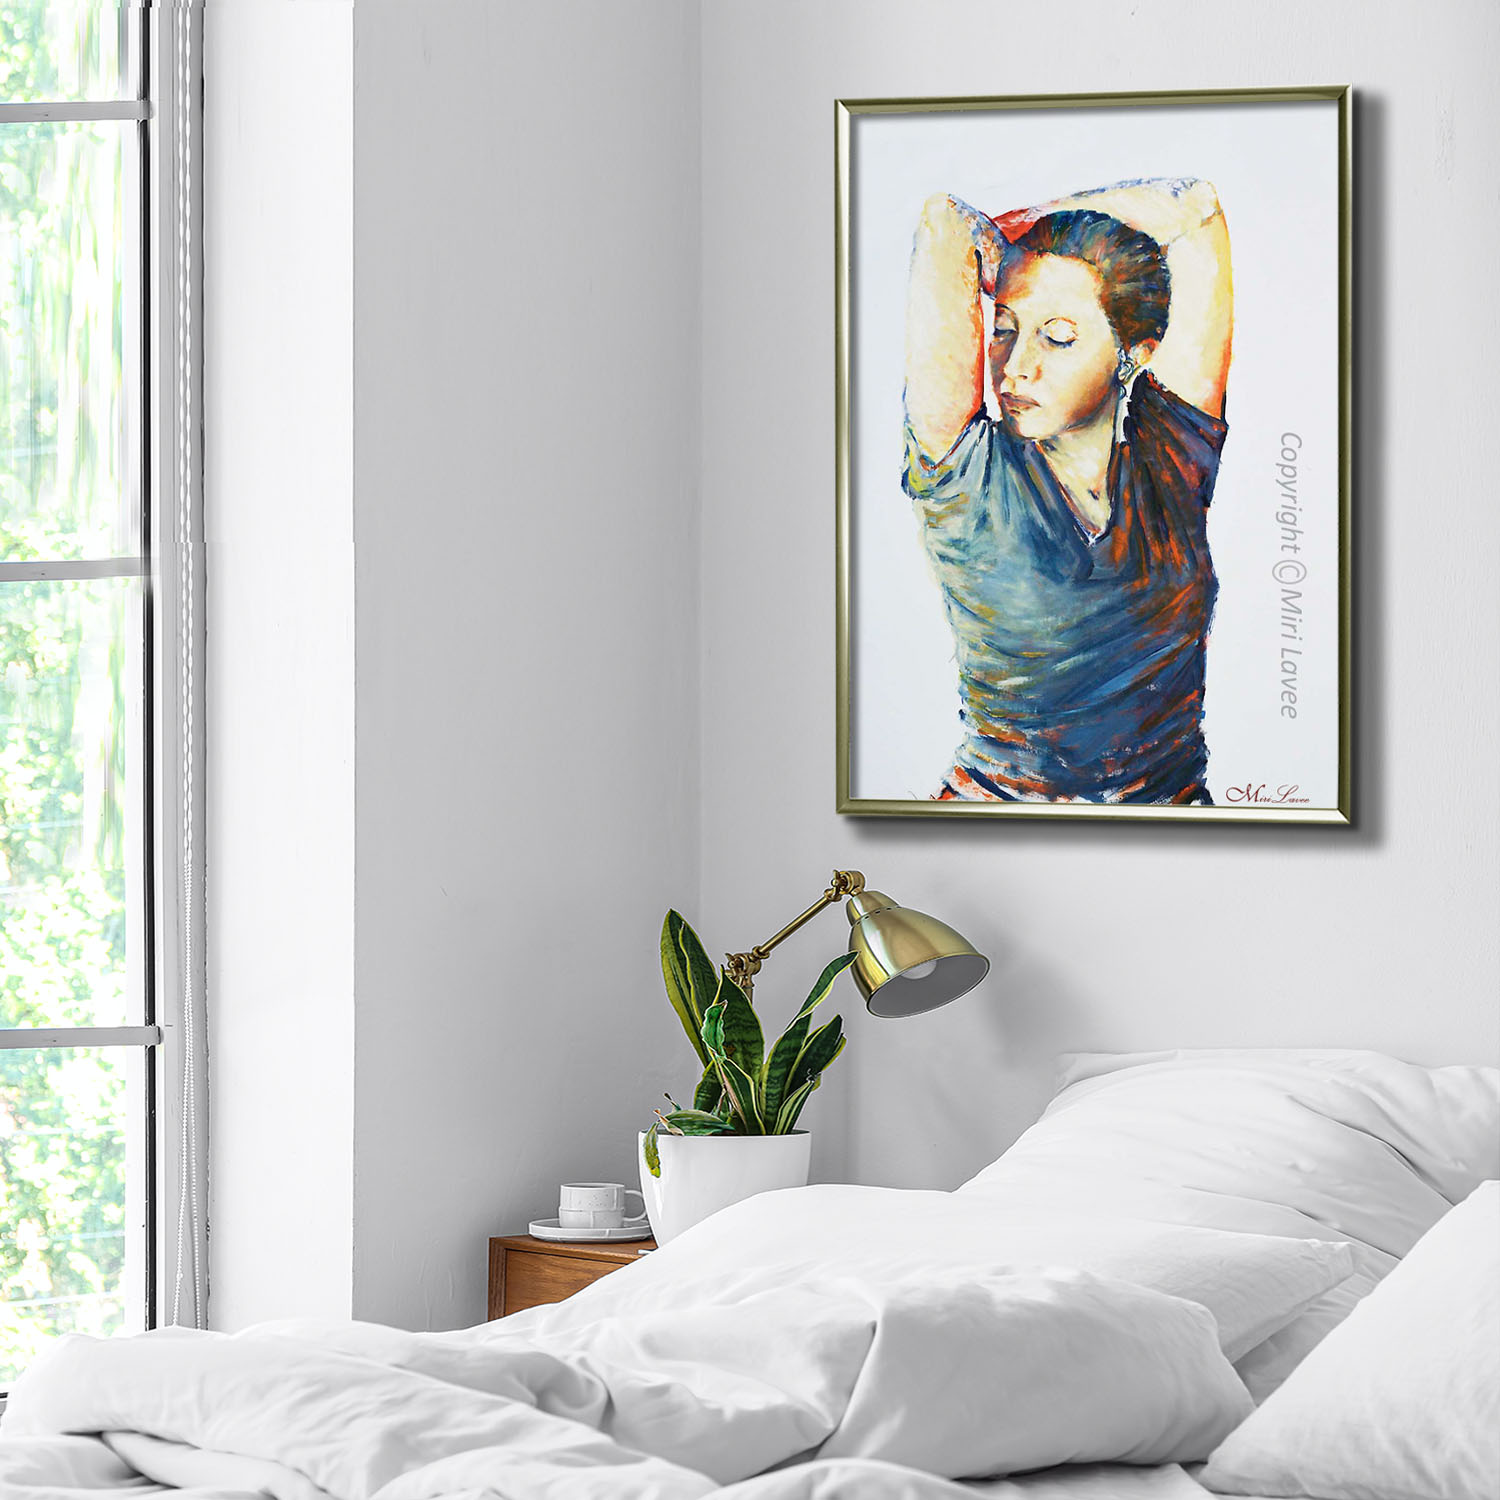 ציור אישה עם ידיים משולבות מאחורי הראש בחדר שינה לבן מעל המיטה ציירת מירי לביא